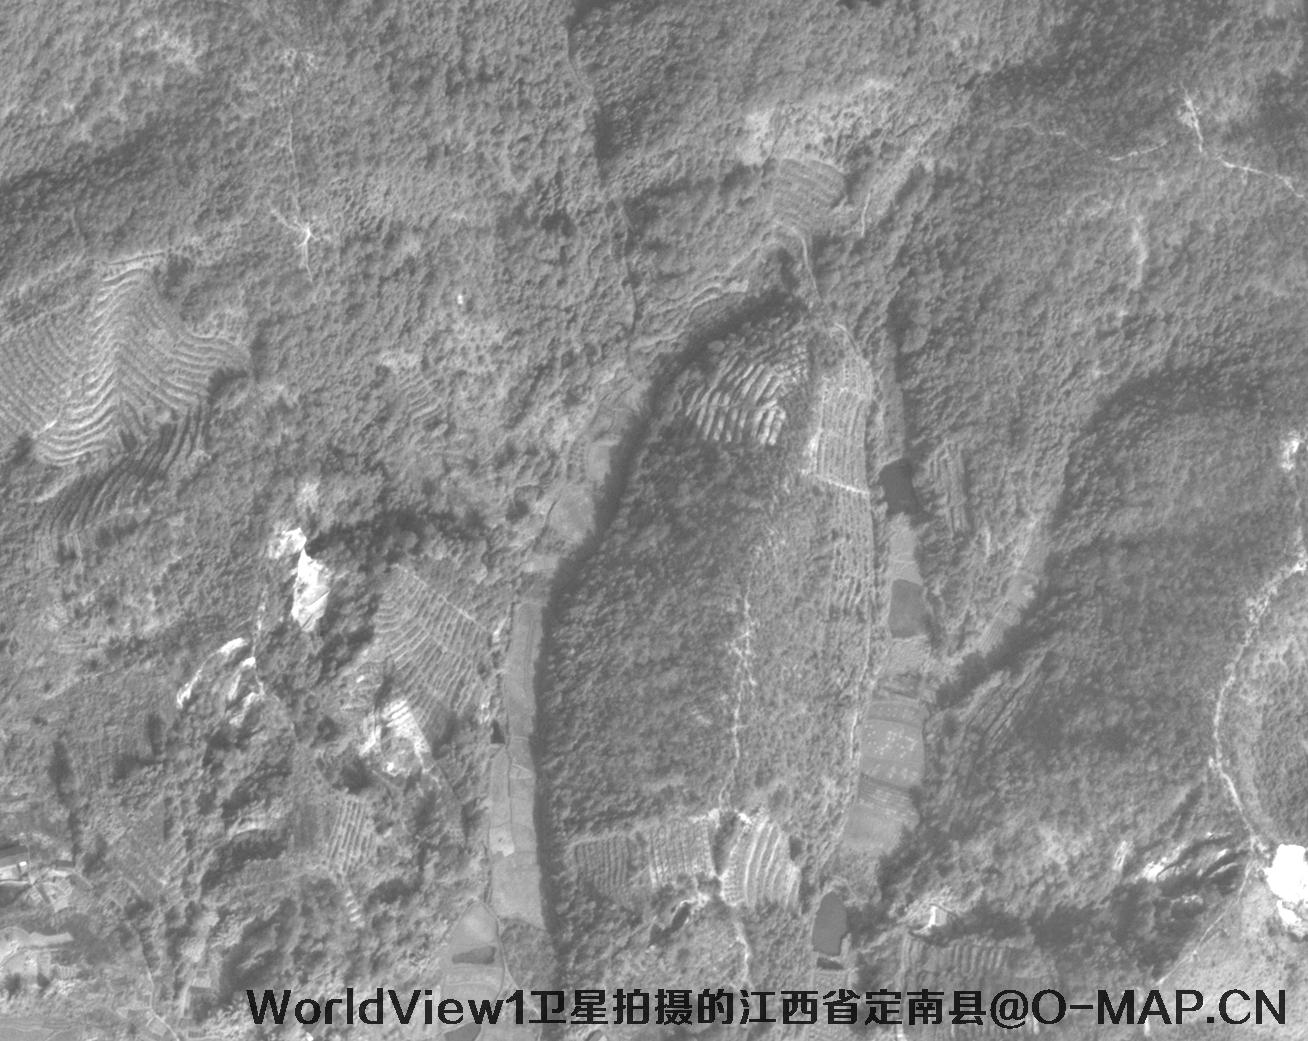 WorldView1卫星拍摄的江西省定南县